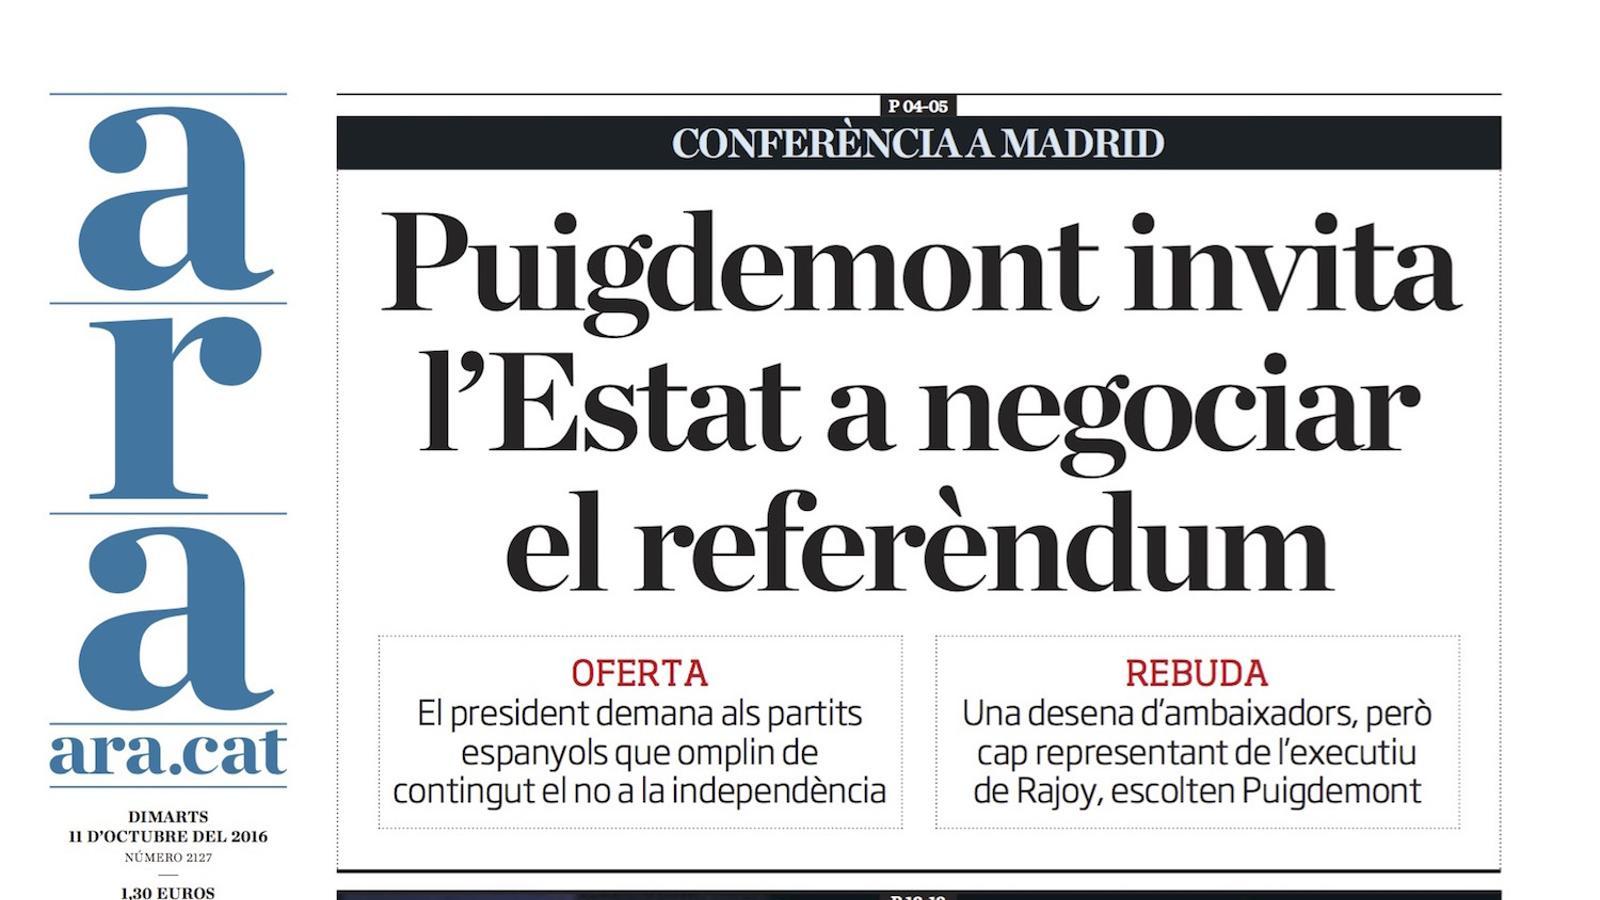 "Puigdemont invita l'Estat a negociar el referèndum", portada de l'ARA